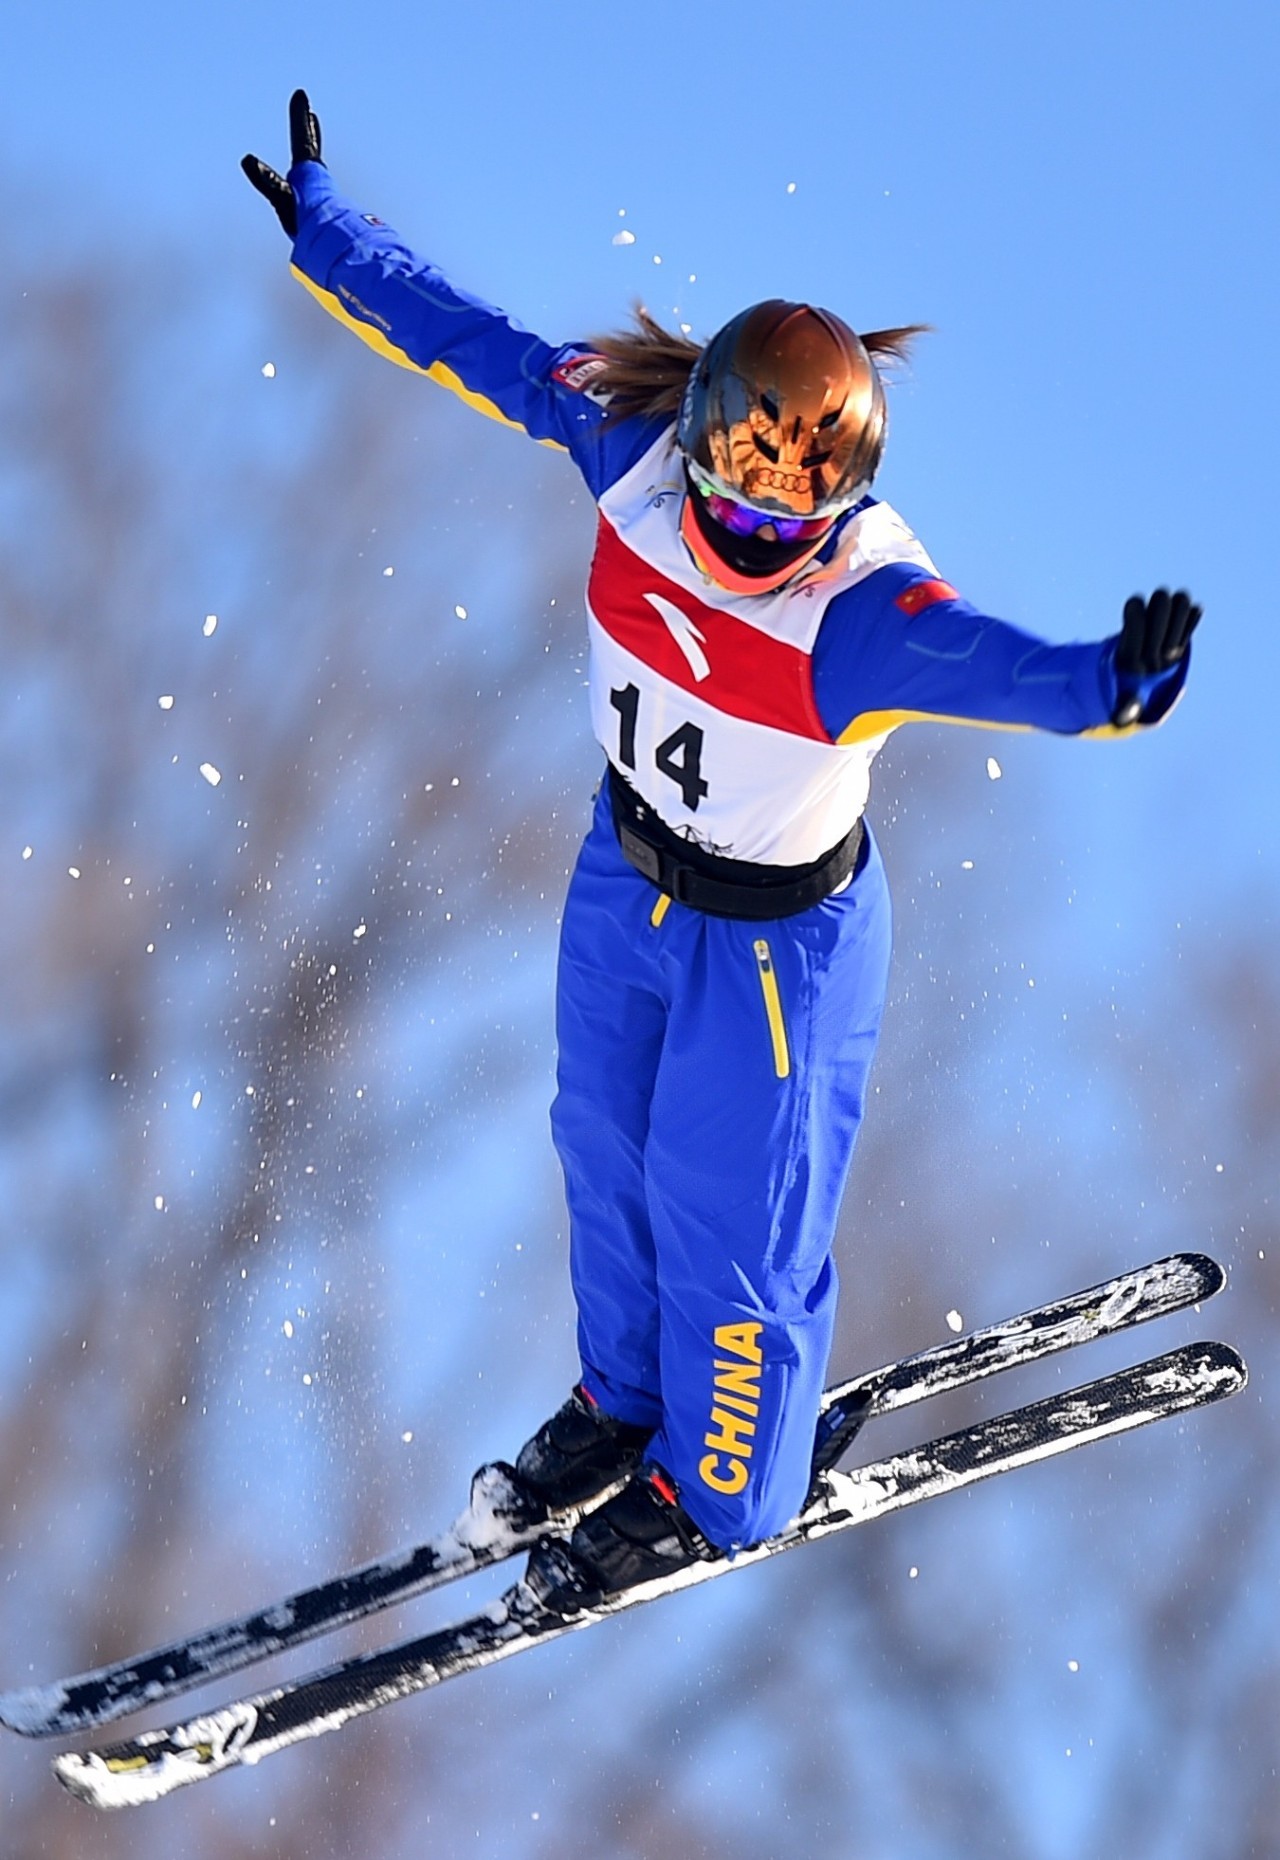 徐梦桃夺得自由式滑雪空中技巧世界杯首站冠军